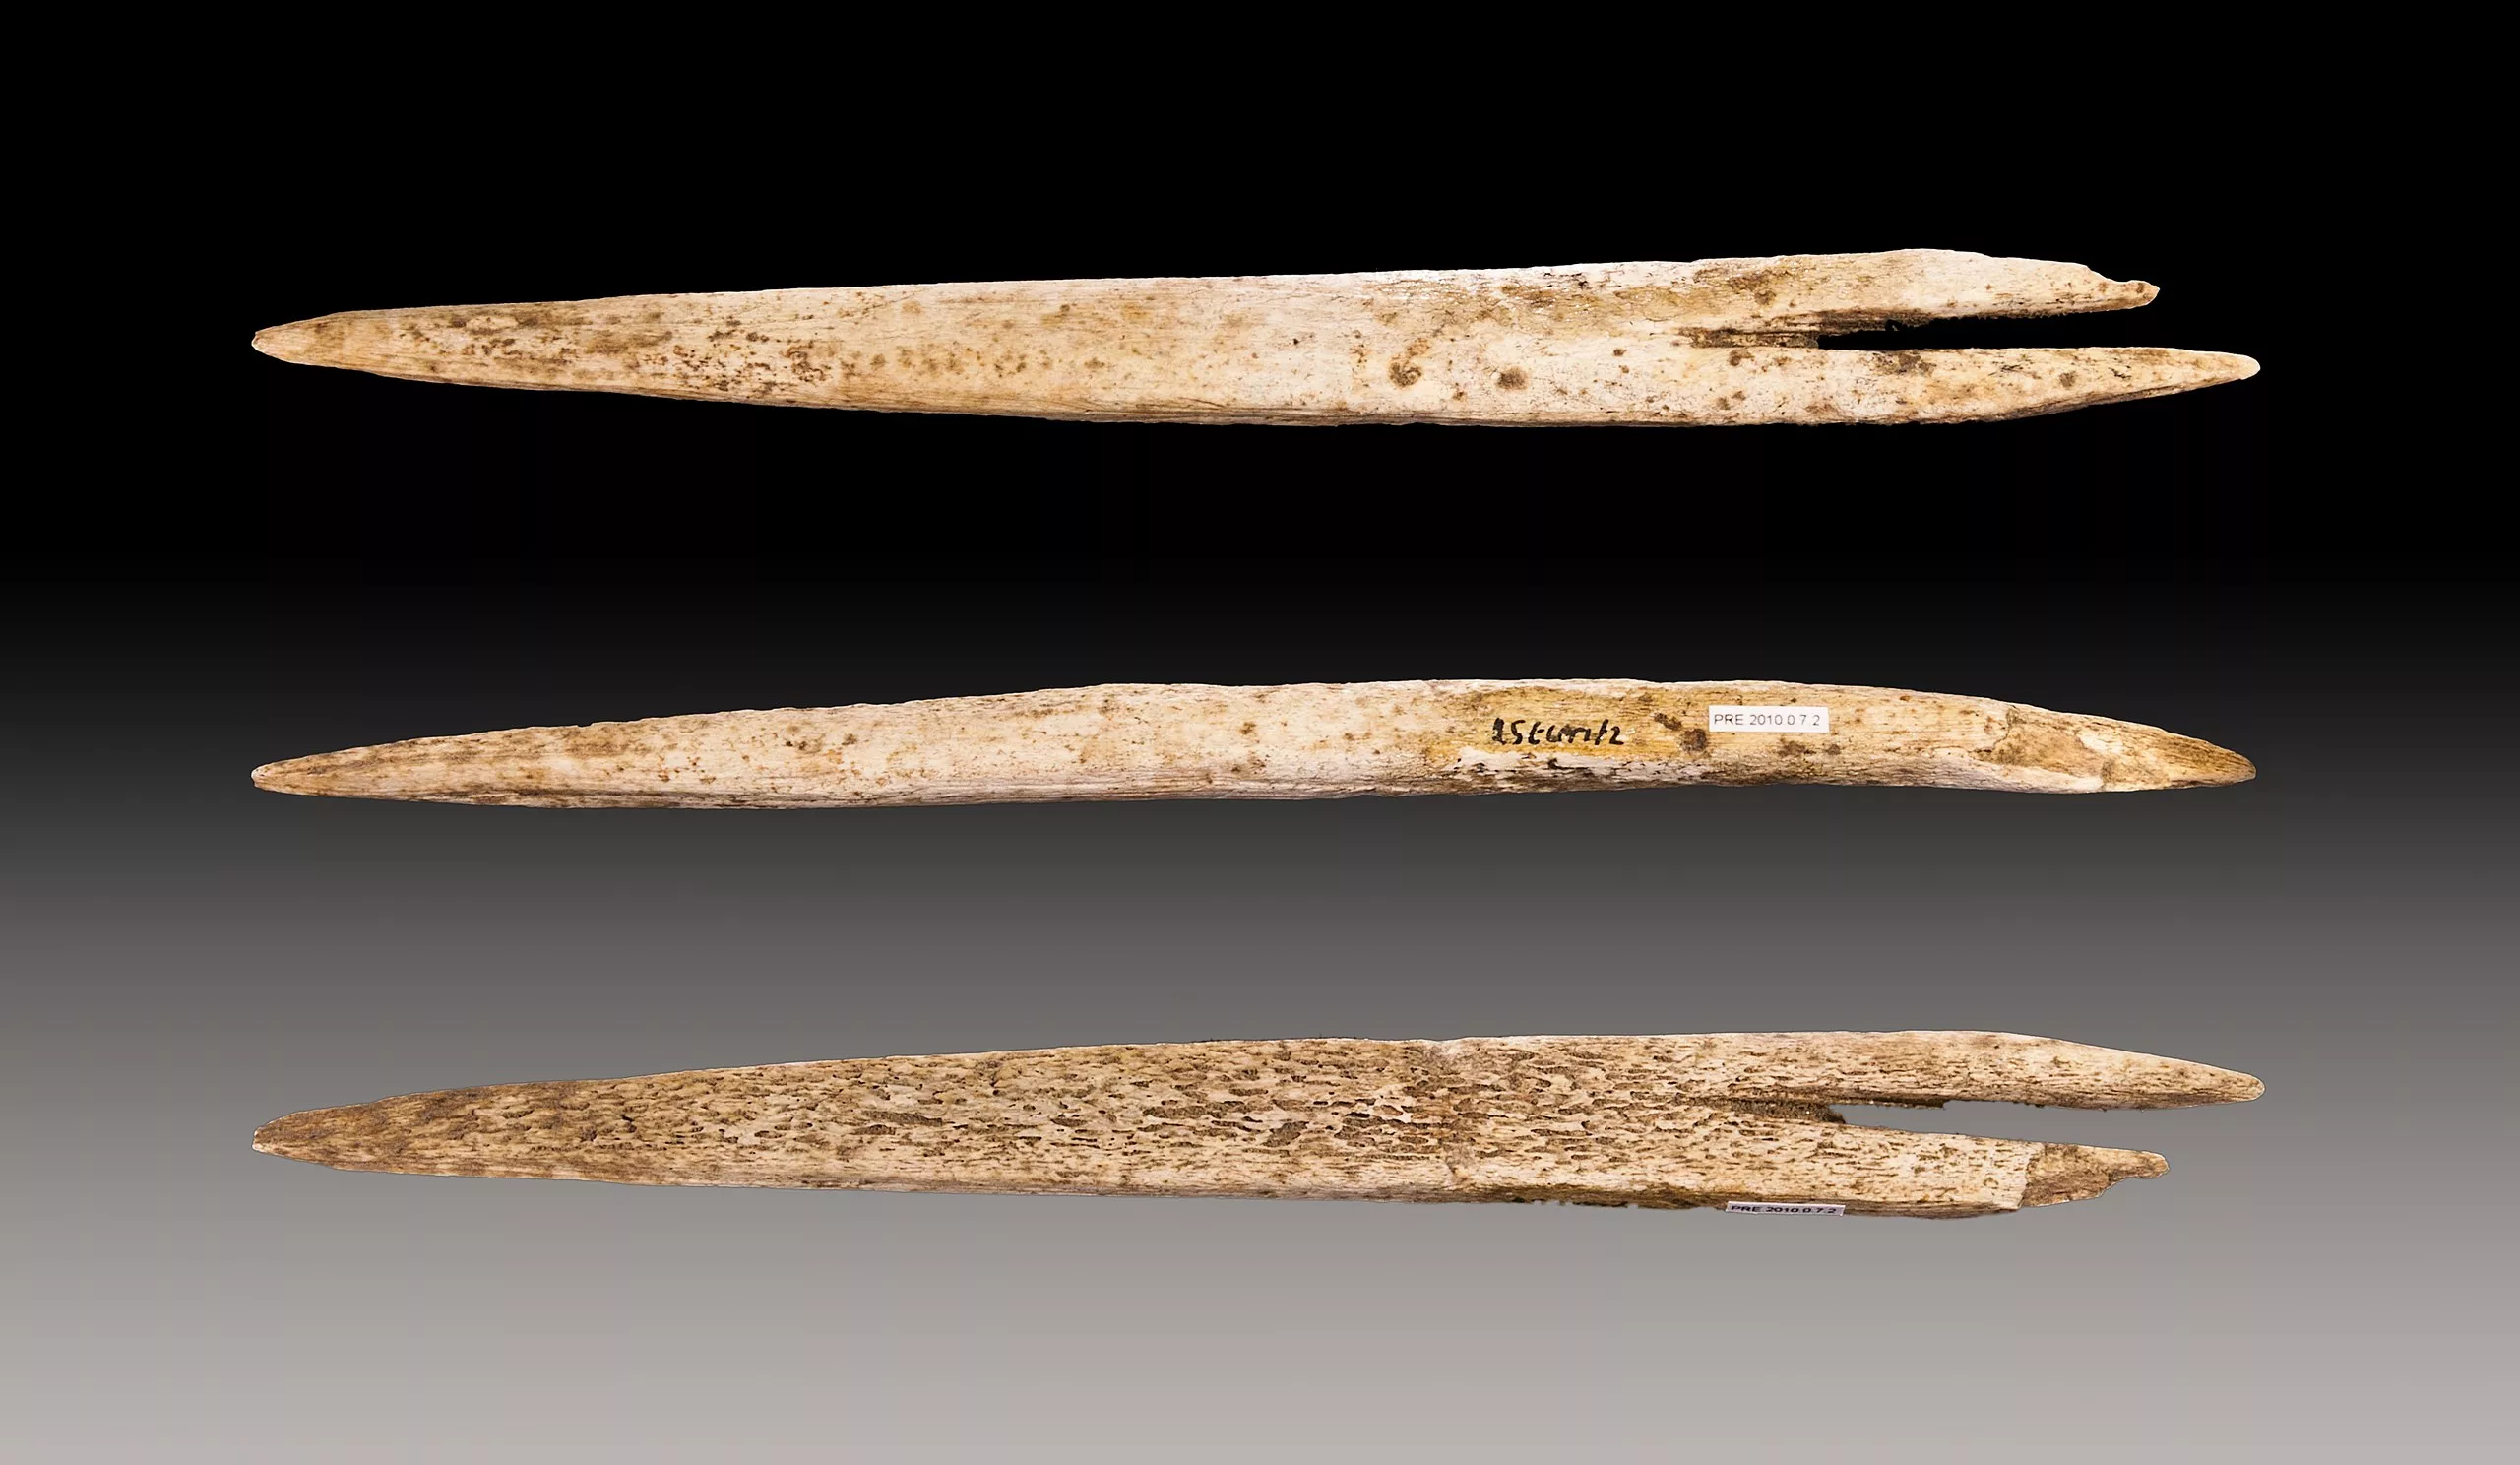 La punta de l'atzagaia és, generalment, l'única resta que troben els arqueòlegs en les excavacions, perquè el mànec de fusta es podreix amb el pas del temps